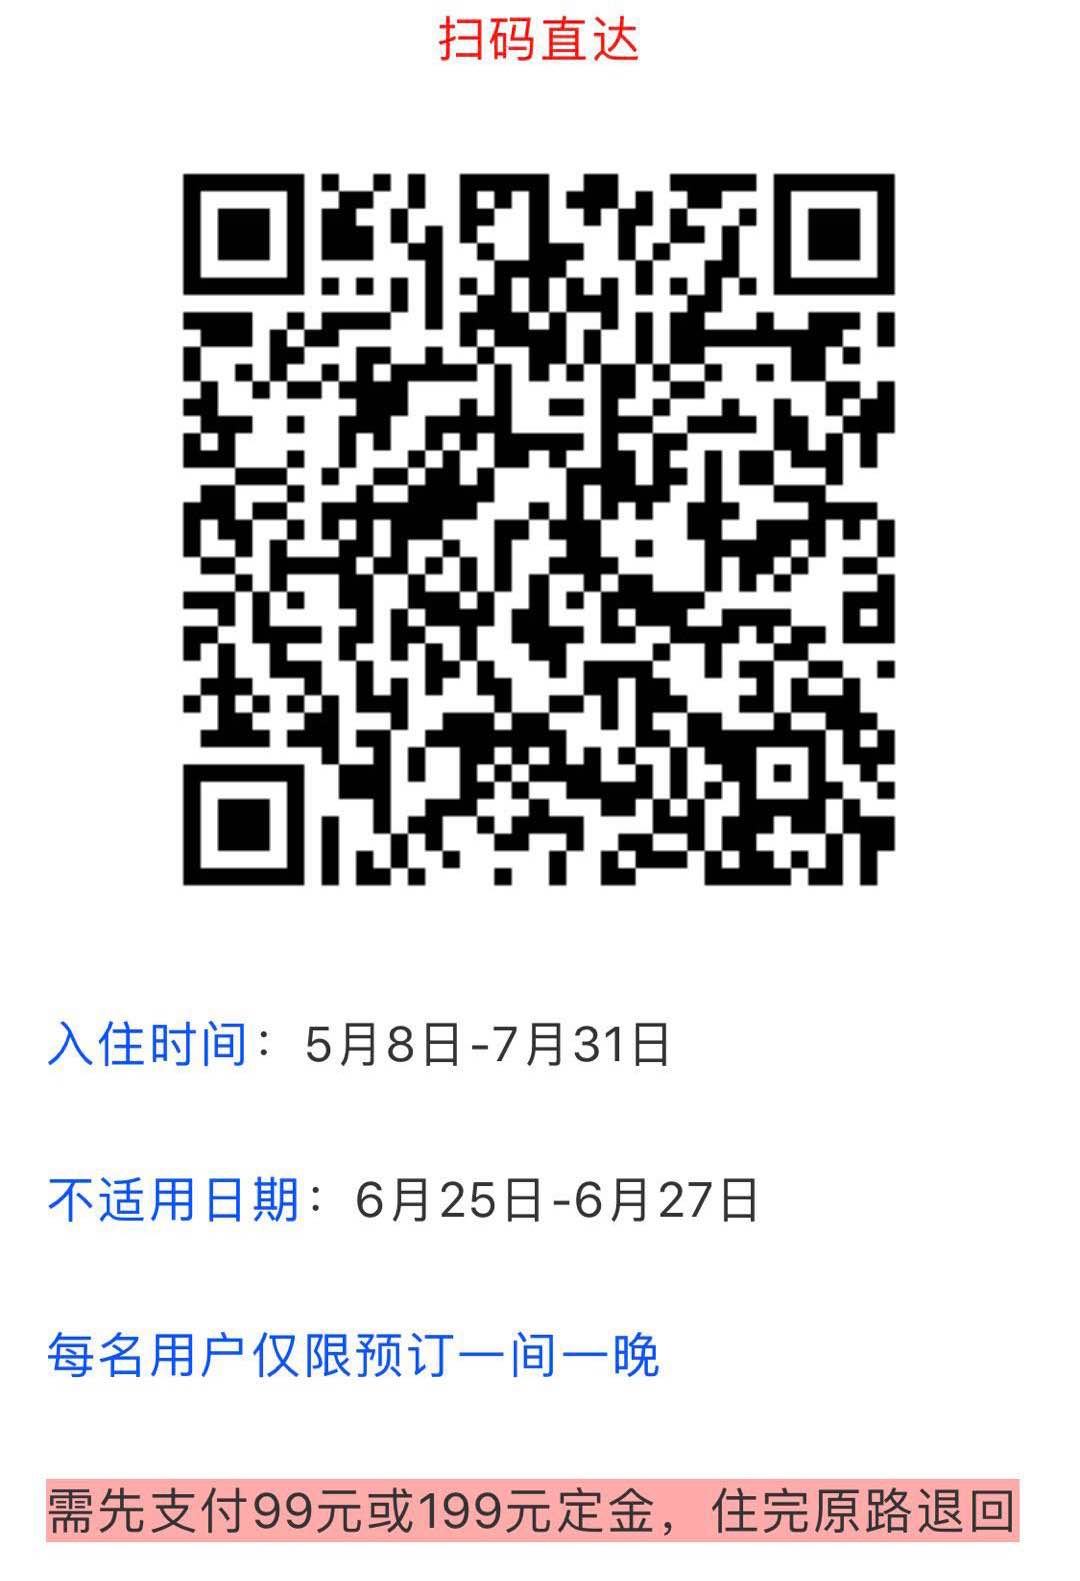 凤凰酒店0元-惠小助(52huixz.com)